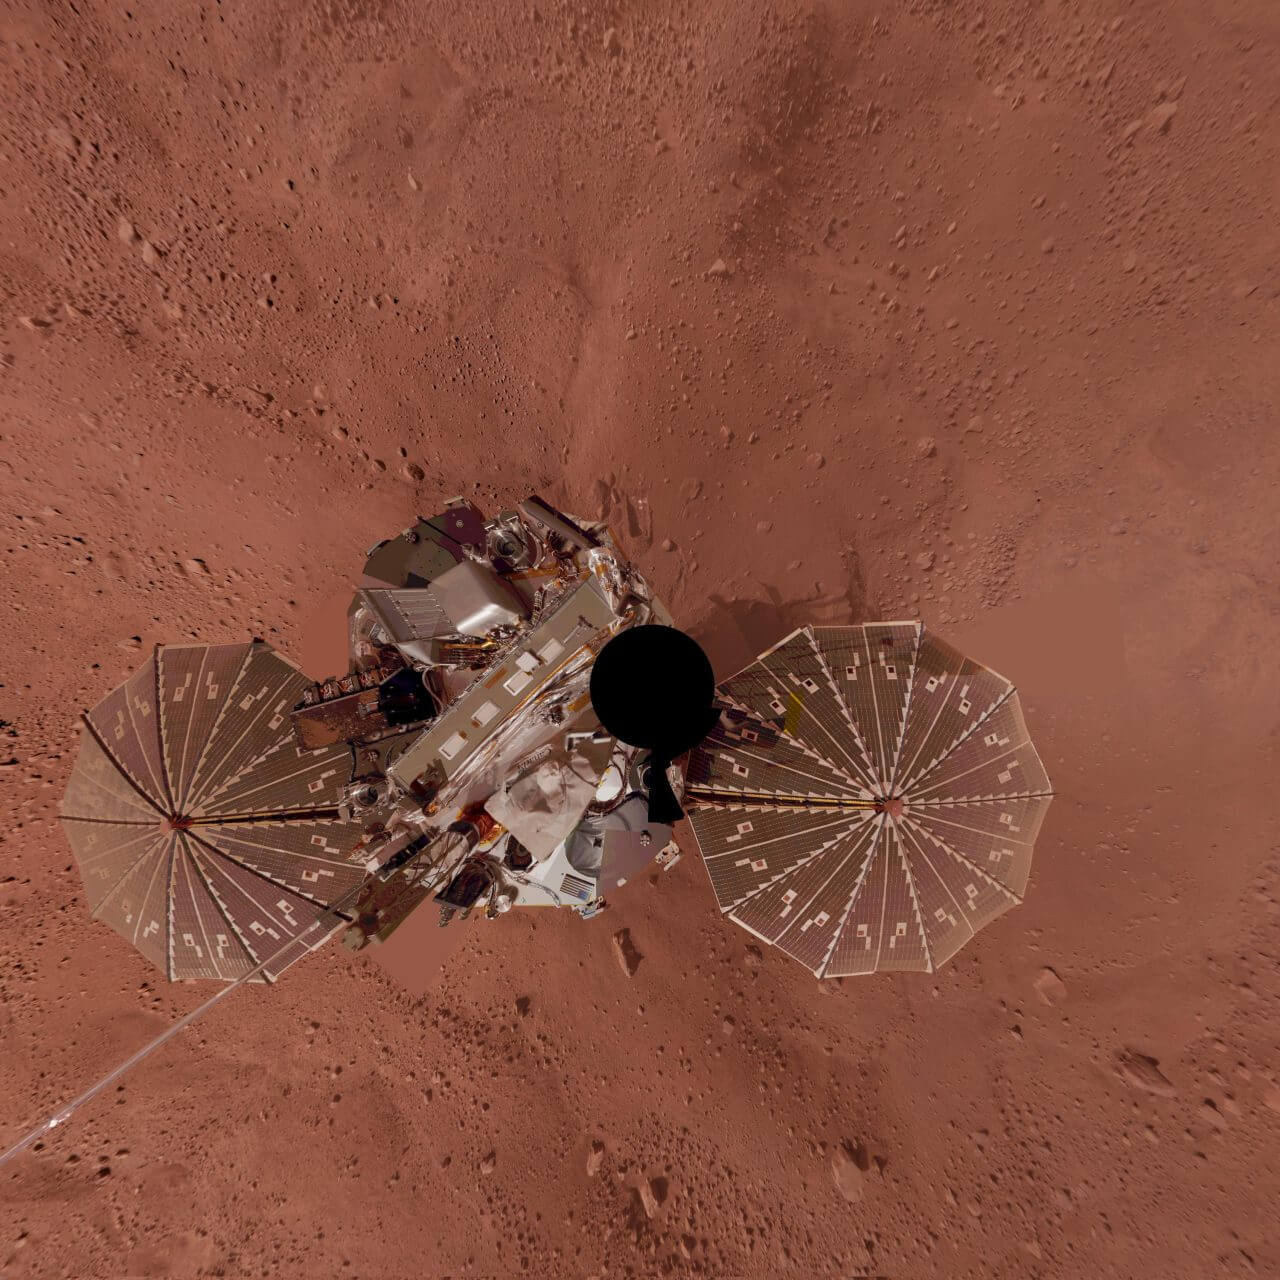 【▲ アメリカ航空宇宙局（NASA）の火星探査機「Phoenix（フェニックス）」が撮影したセルフィー。2008年12月に公開（Credit: NASA/JPL-Caltech/University of Arizona/Texas A&M University）】